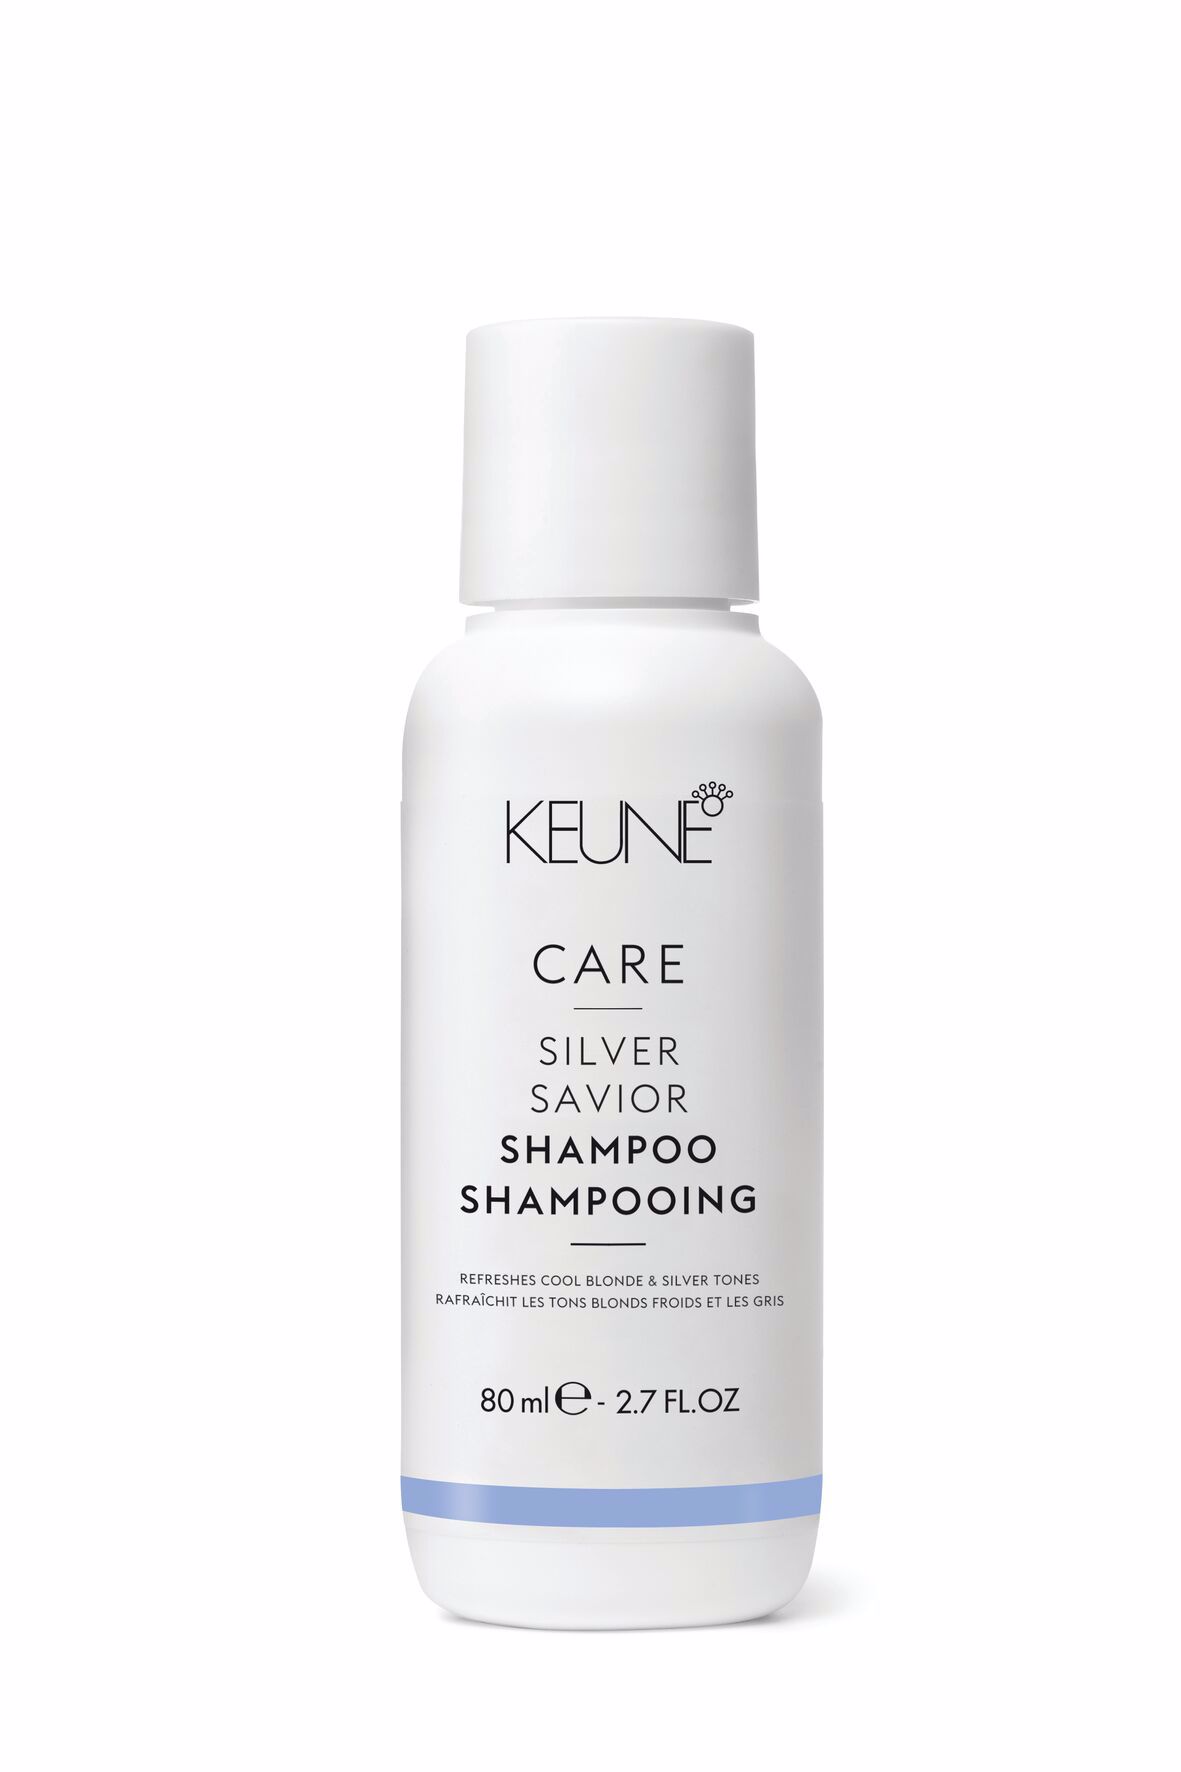 Pflege und Farbschutz für blondes Haar bietet Care Silver Savior Shampoo. Es neutralisiert Gelbtöne und enthält Provitamin B5 für geschmeidiges Haar. Weizenproteine verleihen zusätzliches Volumen.